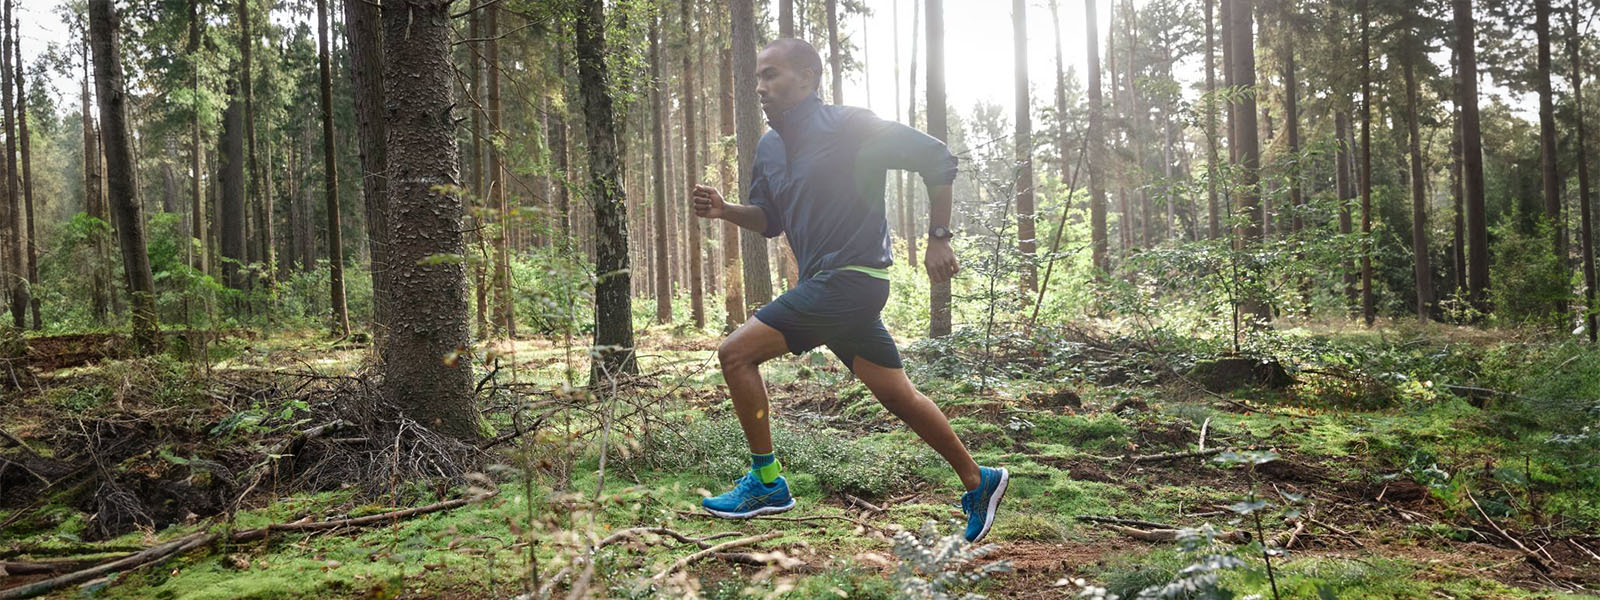 Ein Läufer rennt durch einen dichten Wald bei Gegenlicht